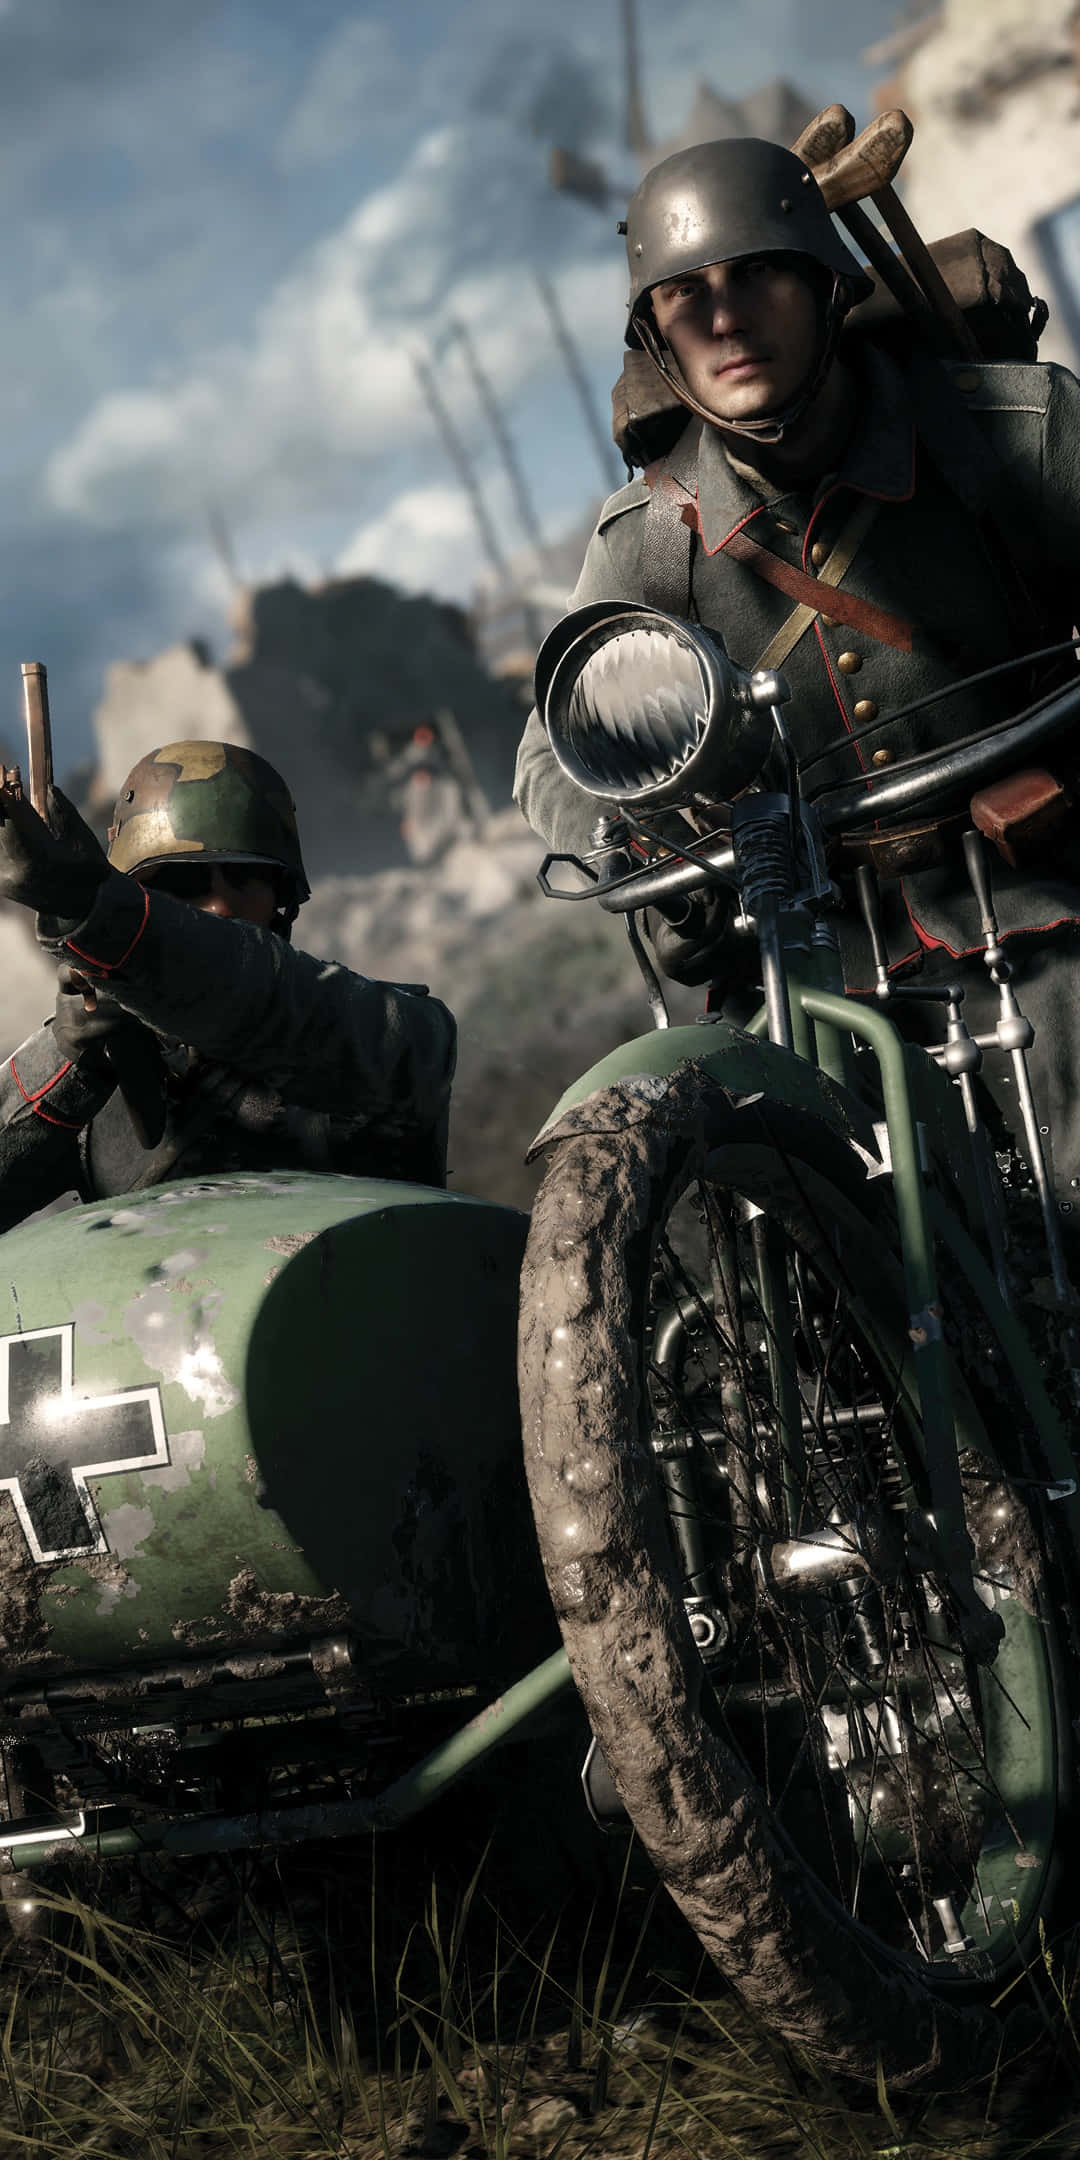 Pixel3xl Hintergrundbild: Soldat Auf Einem Motorrad In Battlefield 1.